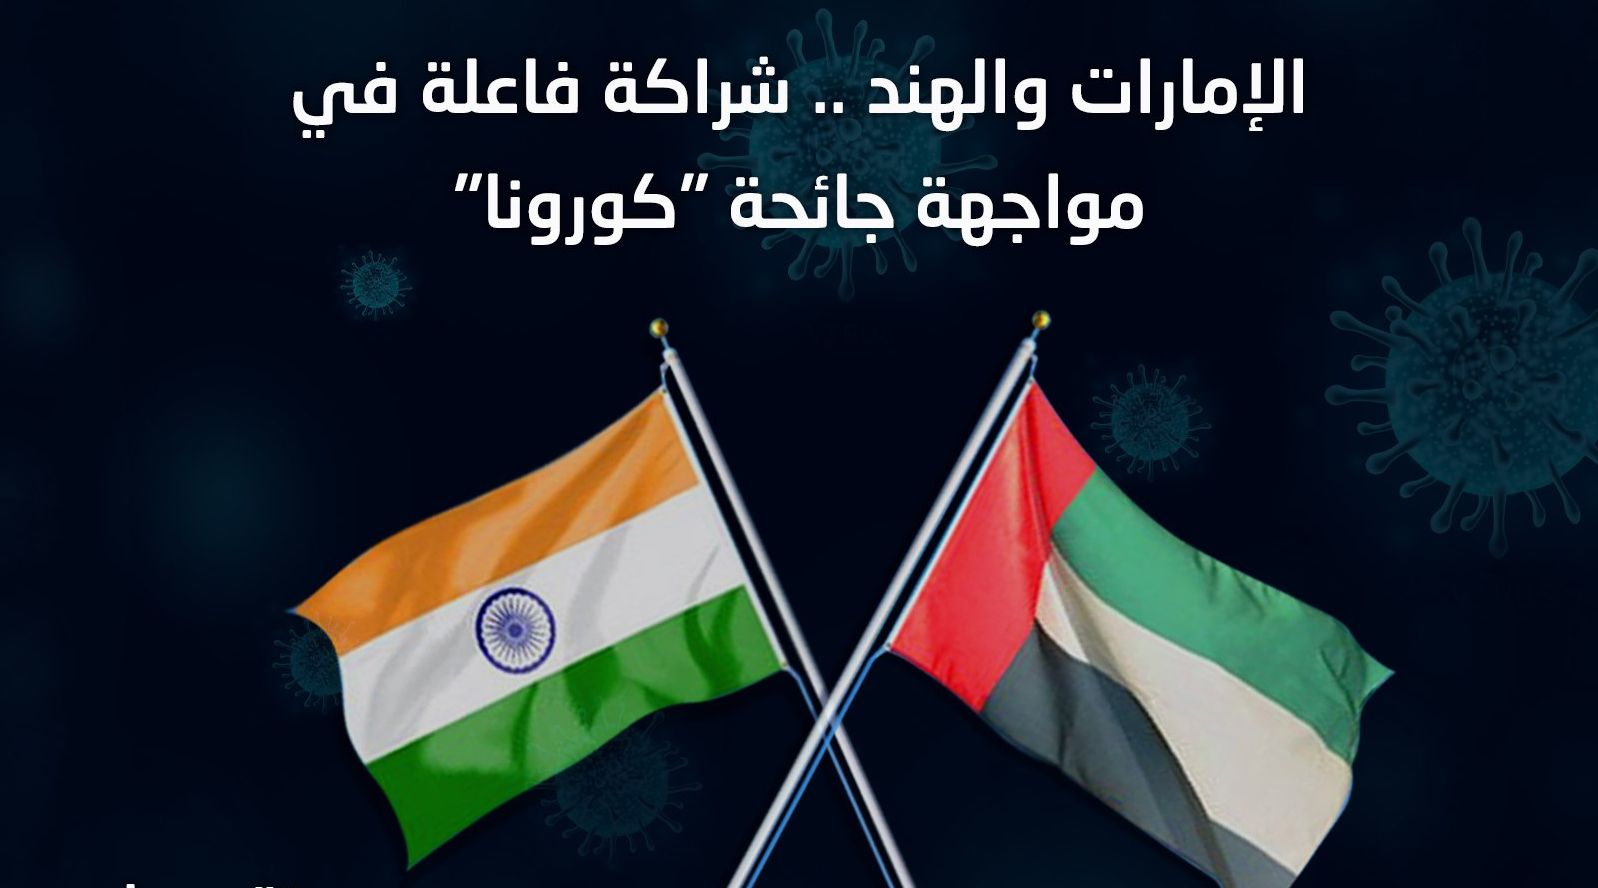 کوویڈ-19 کے خلاف جنگ میں متحدہ عرب امارات اور بھارت کے درمیان تعمیری ہم آہنگی اور تعاون ہے